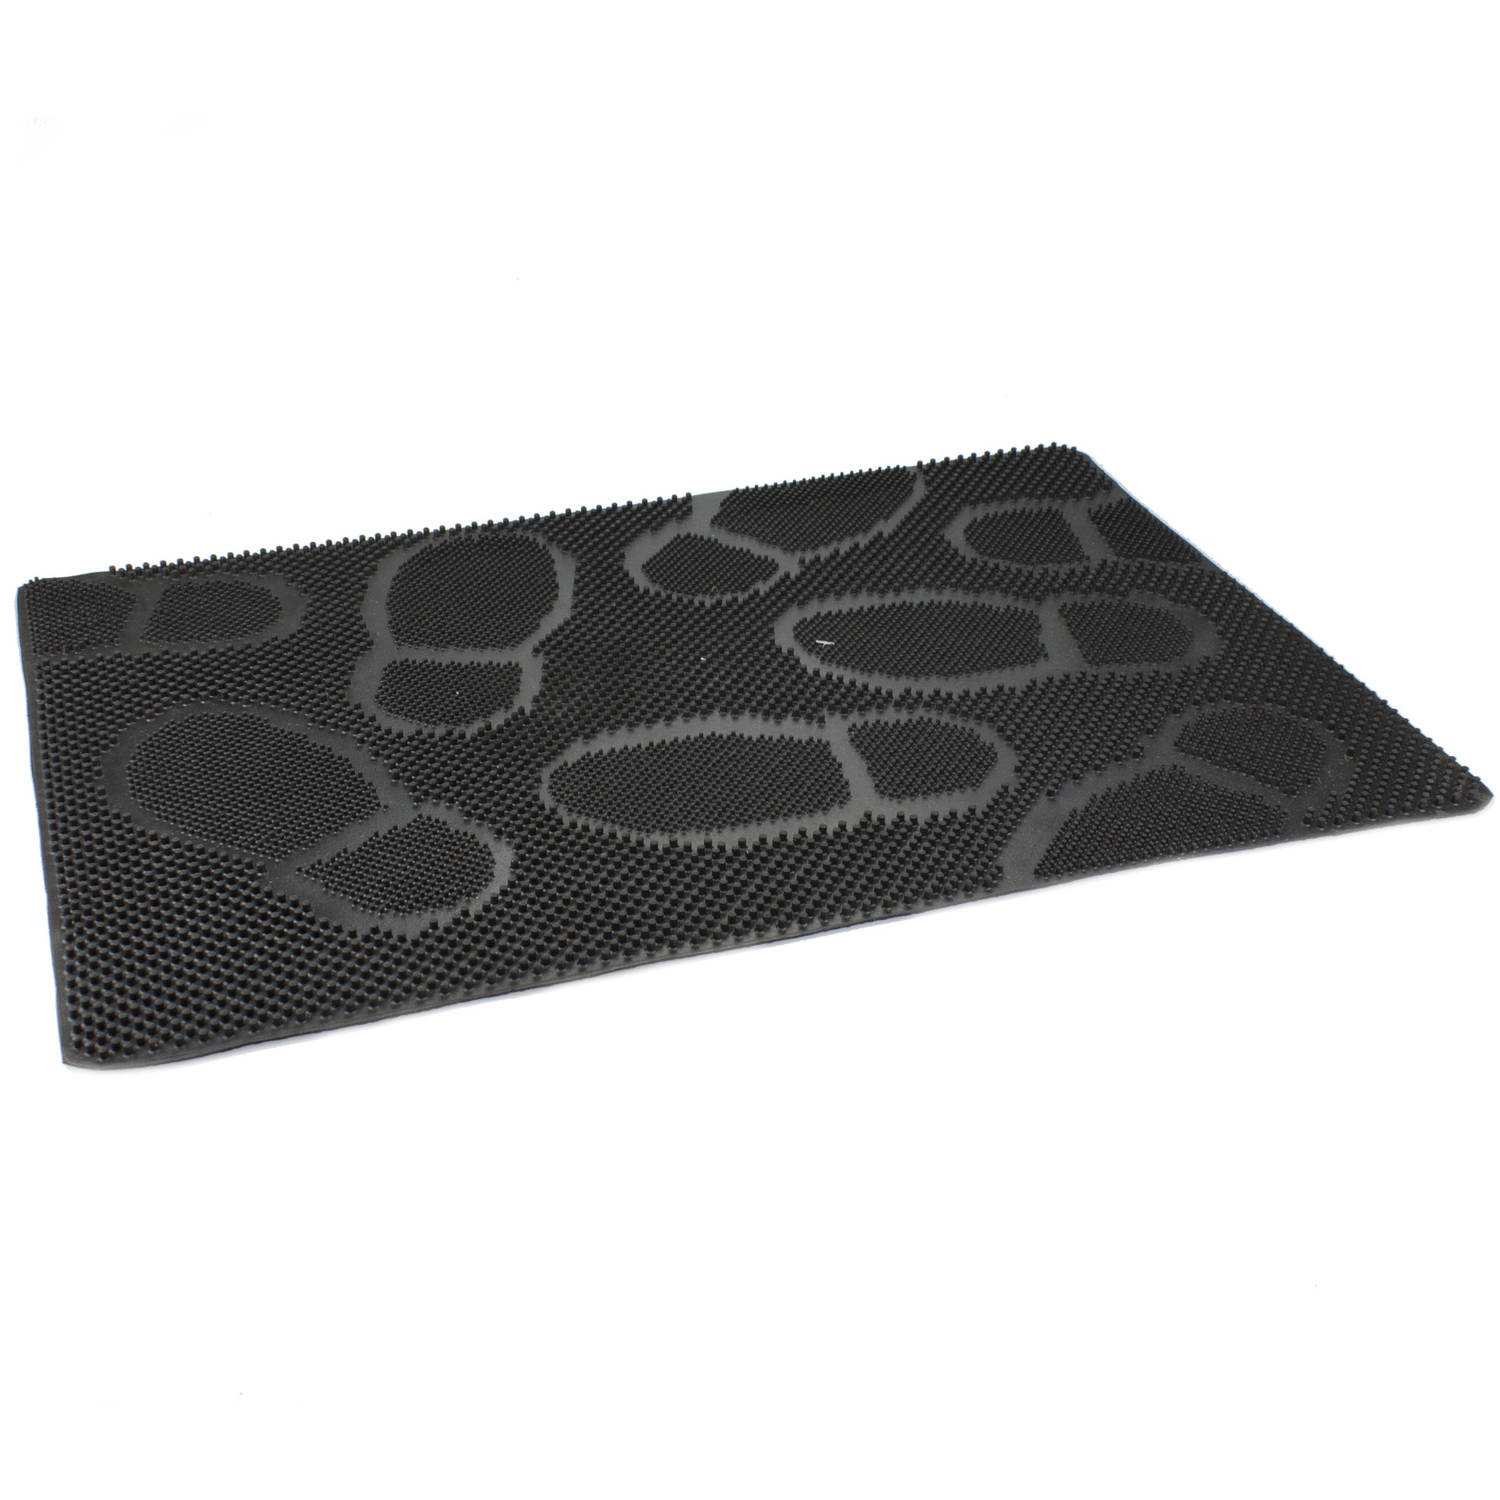 Rubberen deurmat/buitenmat zwart met noppen 60 x 40 cm - Anti slip vloermatten geschikt voor binnen en buiten